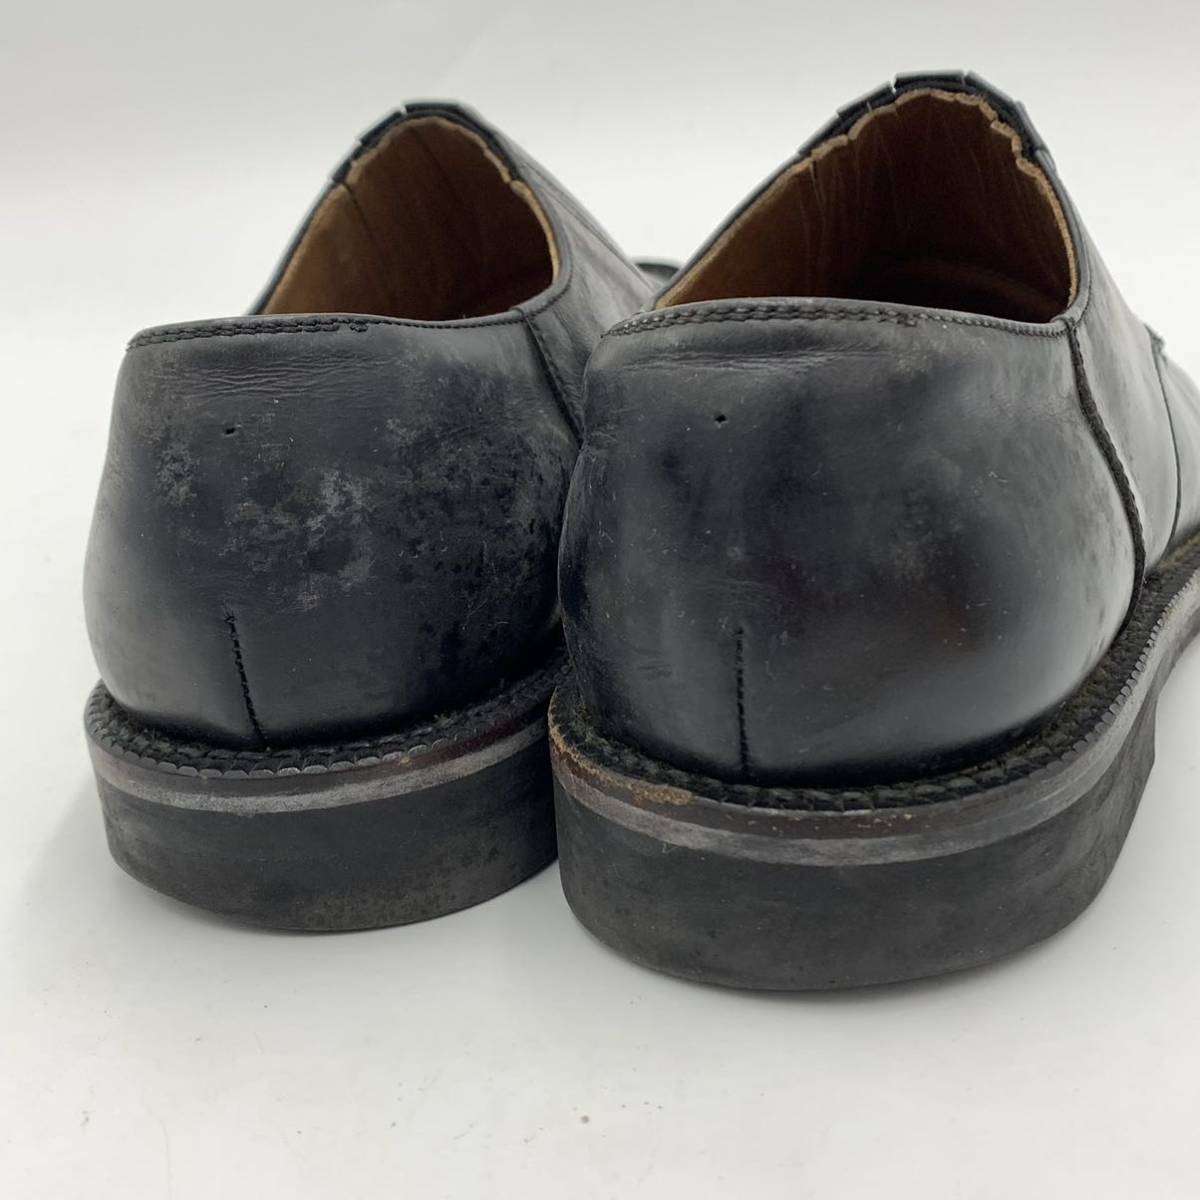 B☆ 高級ラグジュアリー靴 '日本製' COMME des GARCONS HOMME コムデギャルソン 革靴 レザー ローファー ドレスシューズ 24.5cm 紳士靴 BLK_画像3